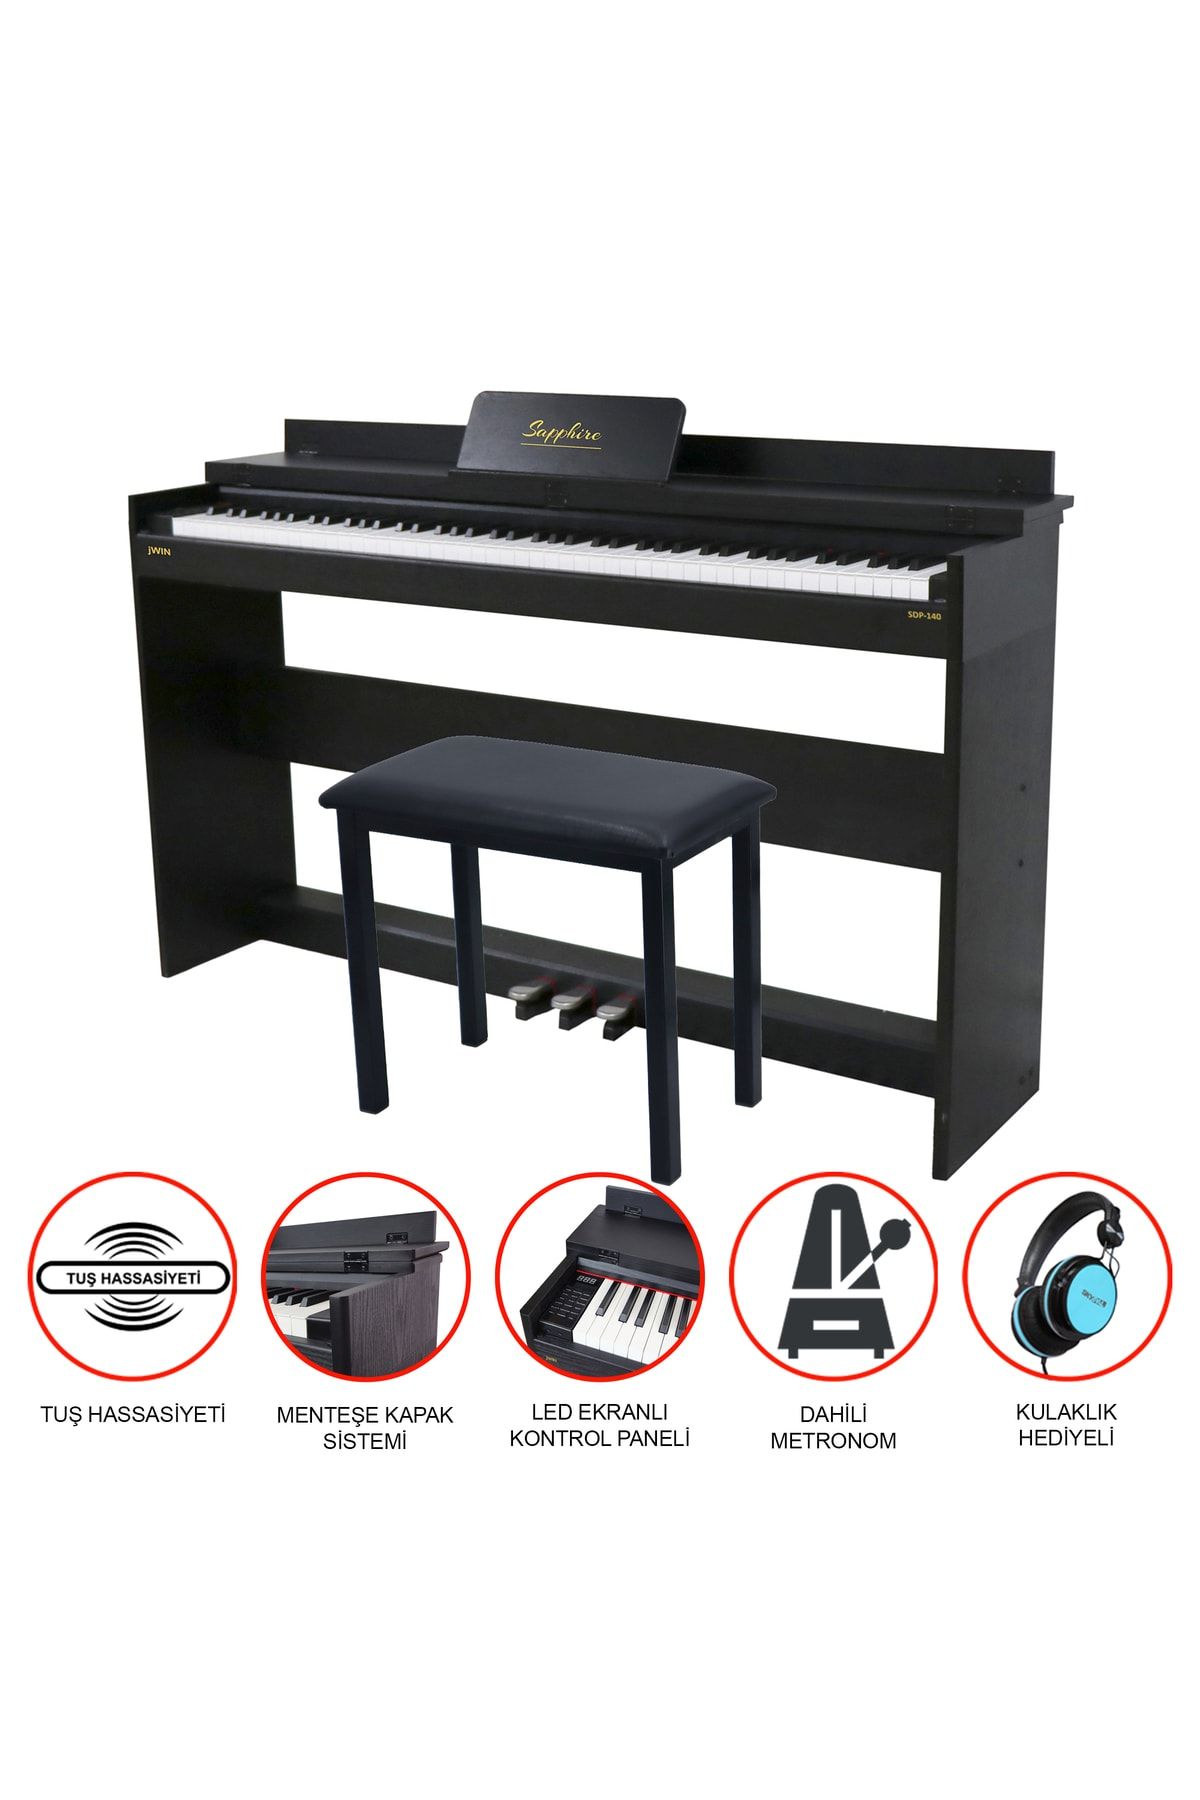 JWIN Sapphire Sdp-140b Çekiç Aksiyonlu Dijital Piyano - Siyah Tabure Ve Kulaklık